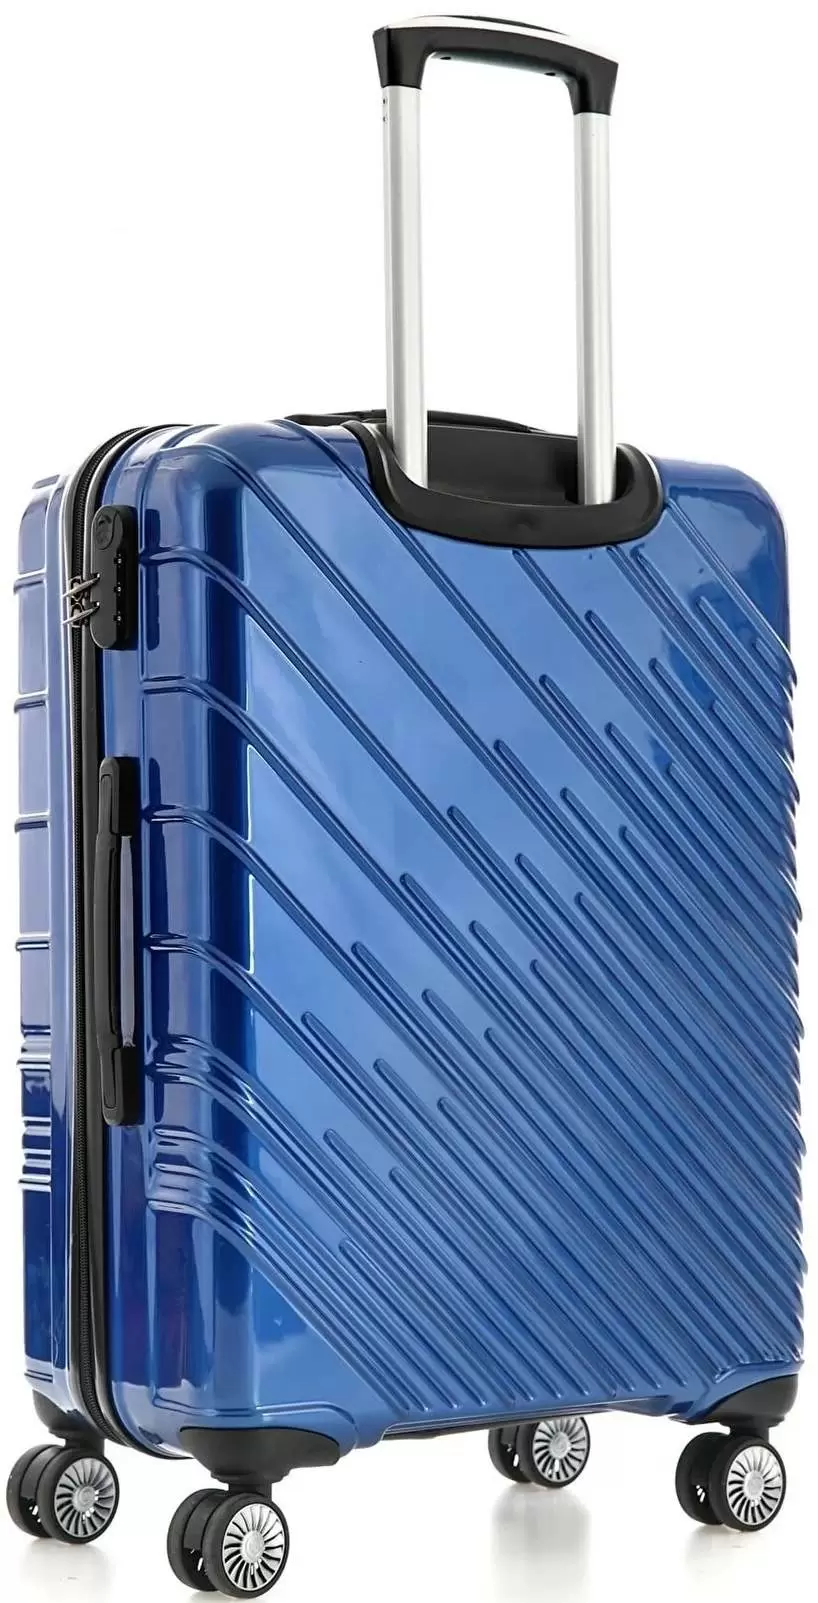 Комплект чемоданов CCS 5234 Set, синий